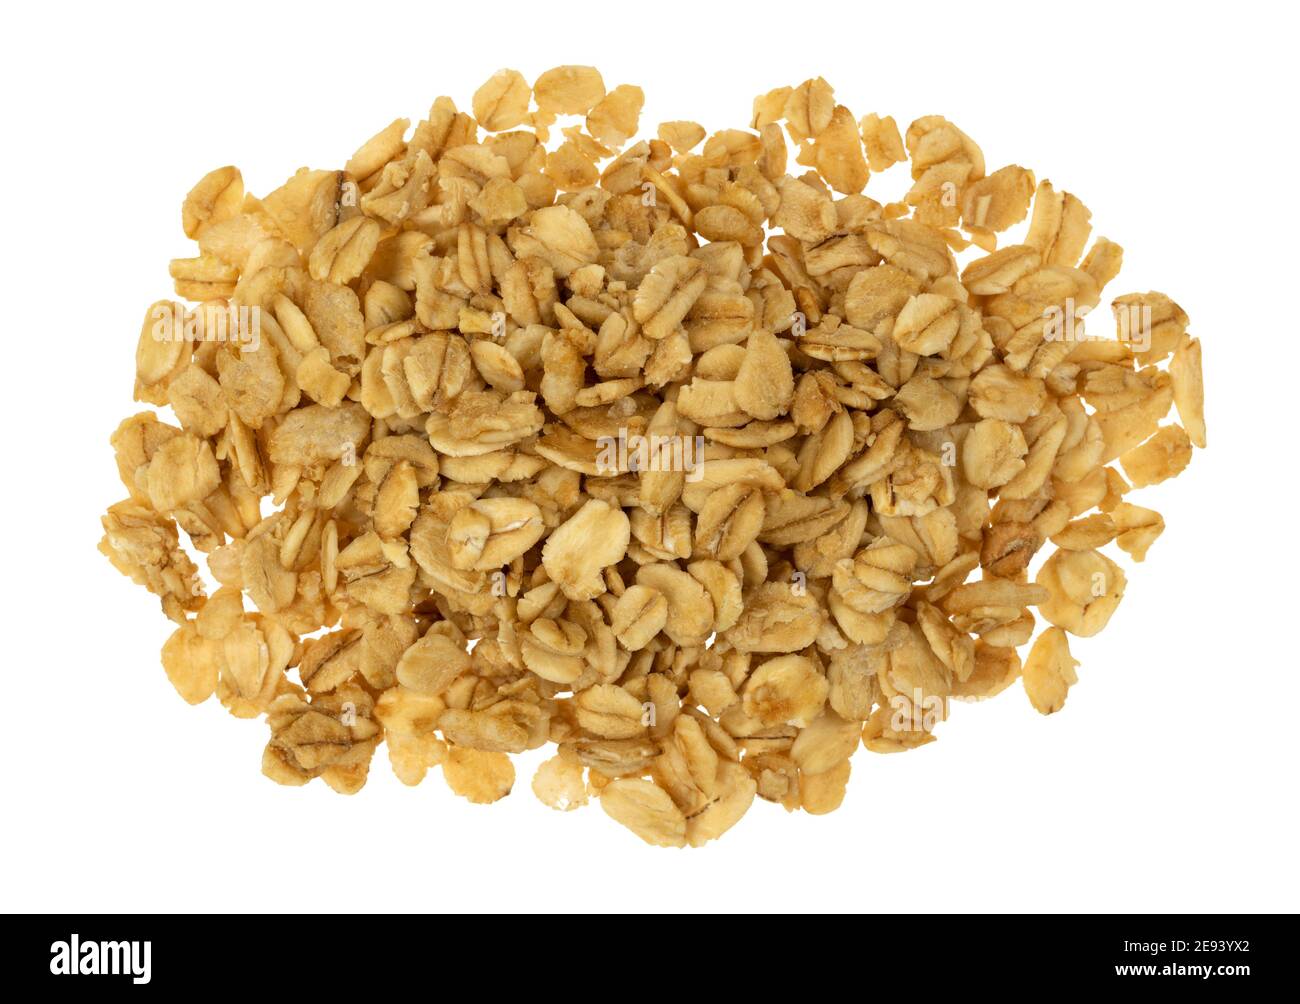 Vue de dessus d'une portion de granola d'avoine brune isolée sur fond blanc. Banque D'Images